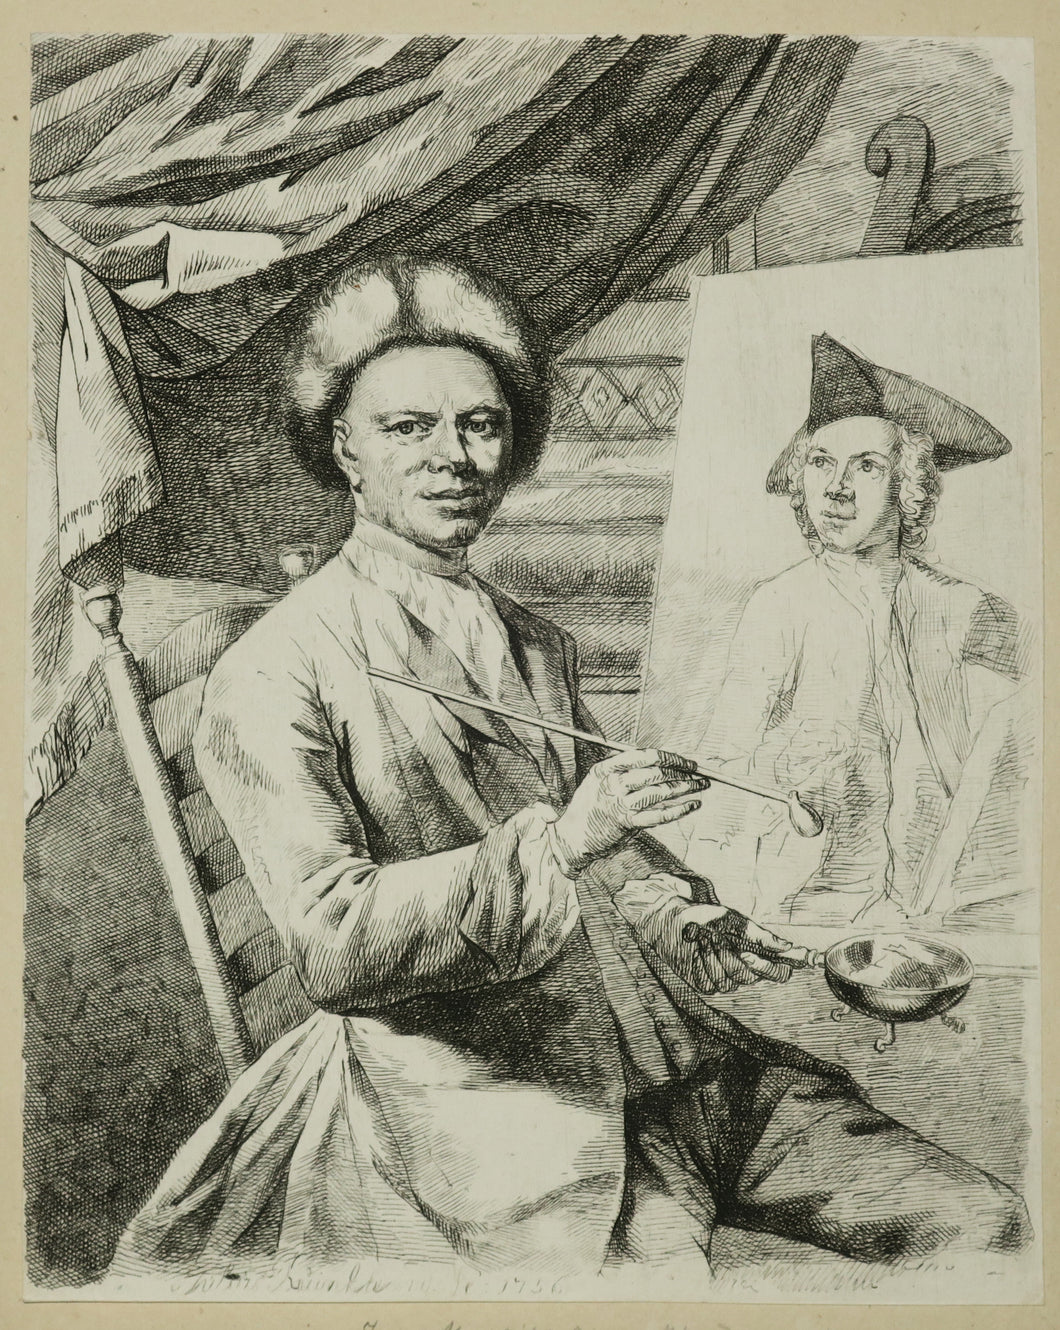 Portrait de Jan Maurits Quinckhard (1688-1771) devant son chevalet, peintre néerlandais et collectionneur d'art.  1756.